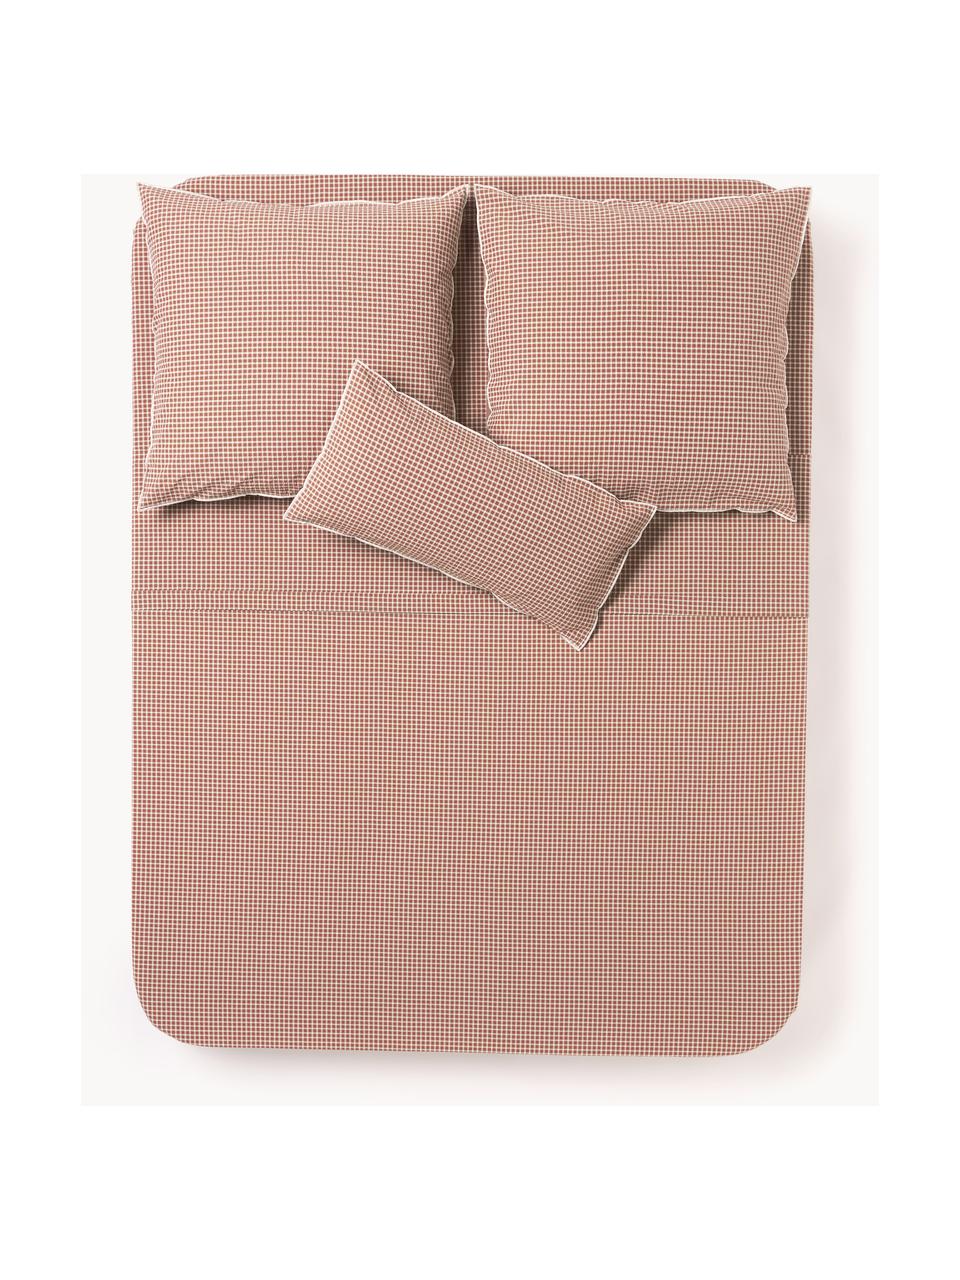 Drap de lit en coton seersucker à carreaux Davey, Terracotta, blanc, 240 x 280 cm